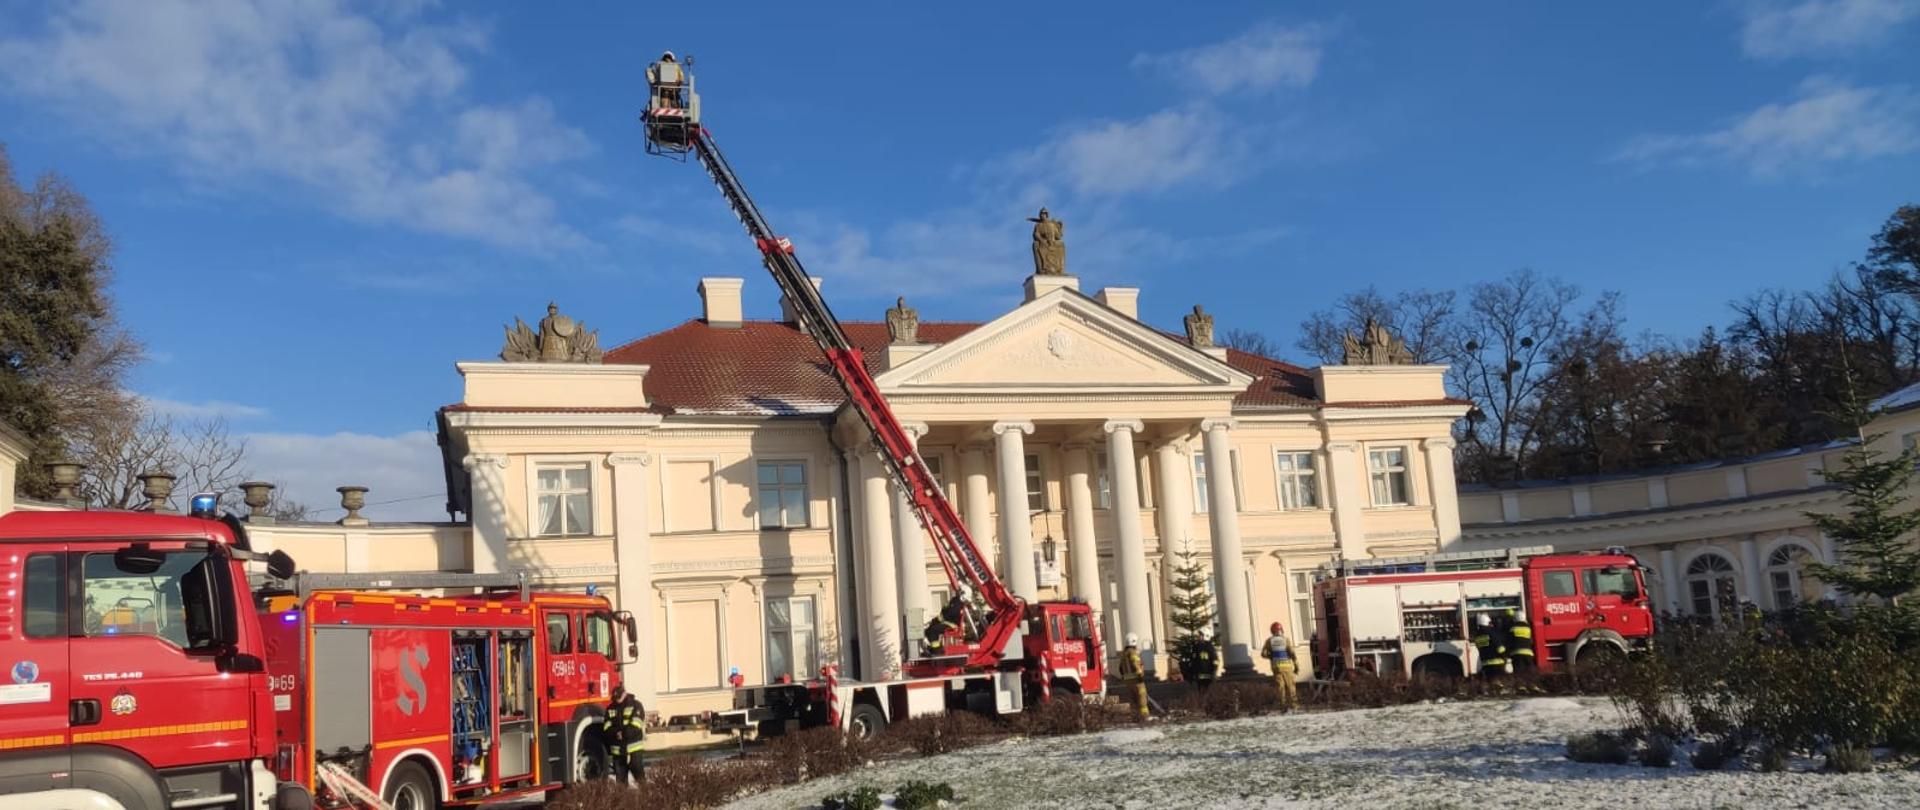 Strażacy podają wodę na budynek muzeum